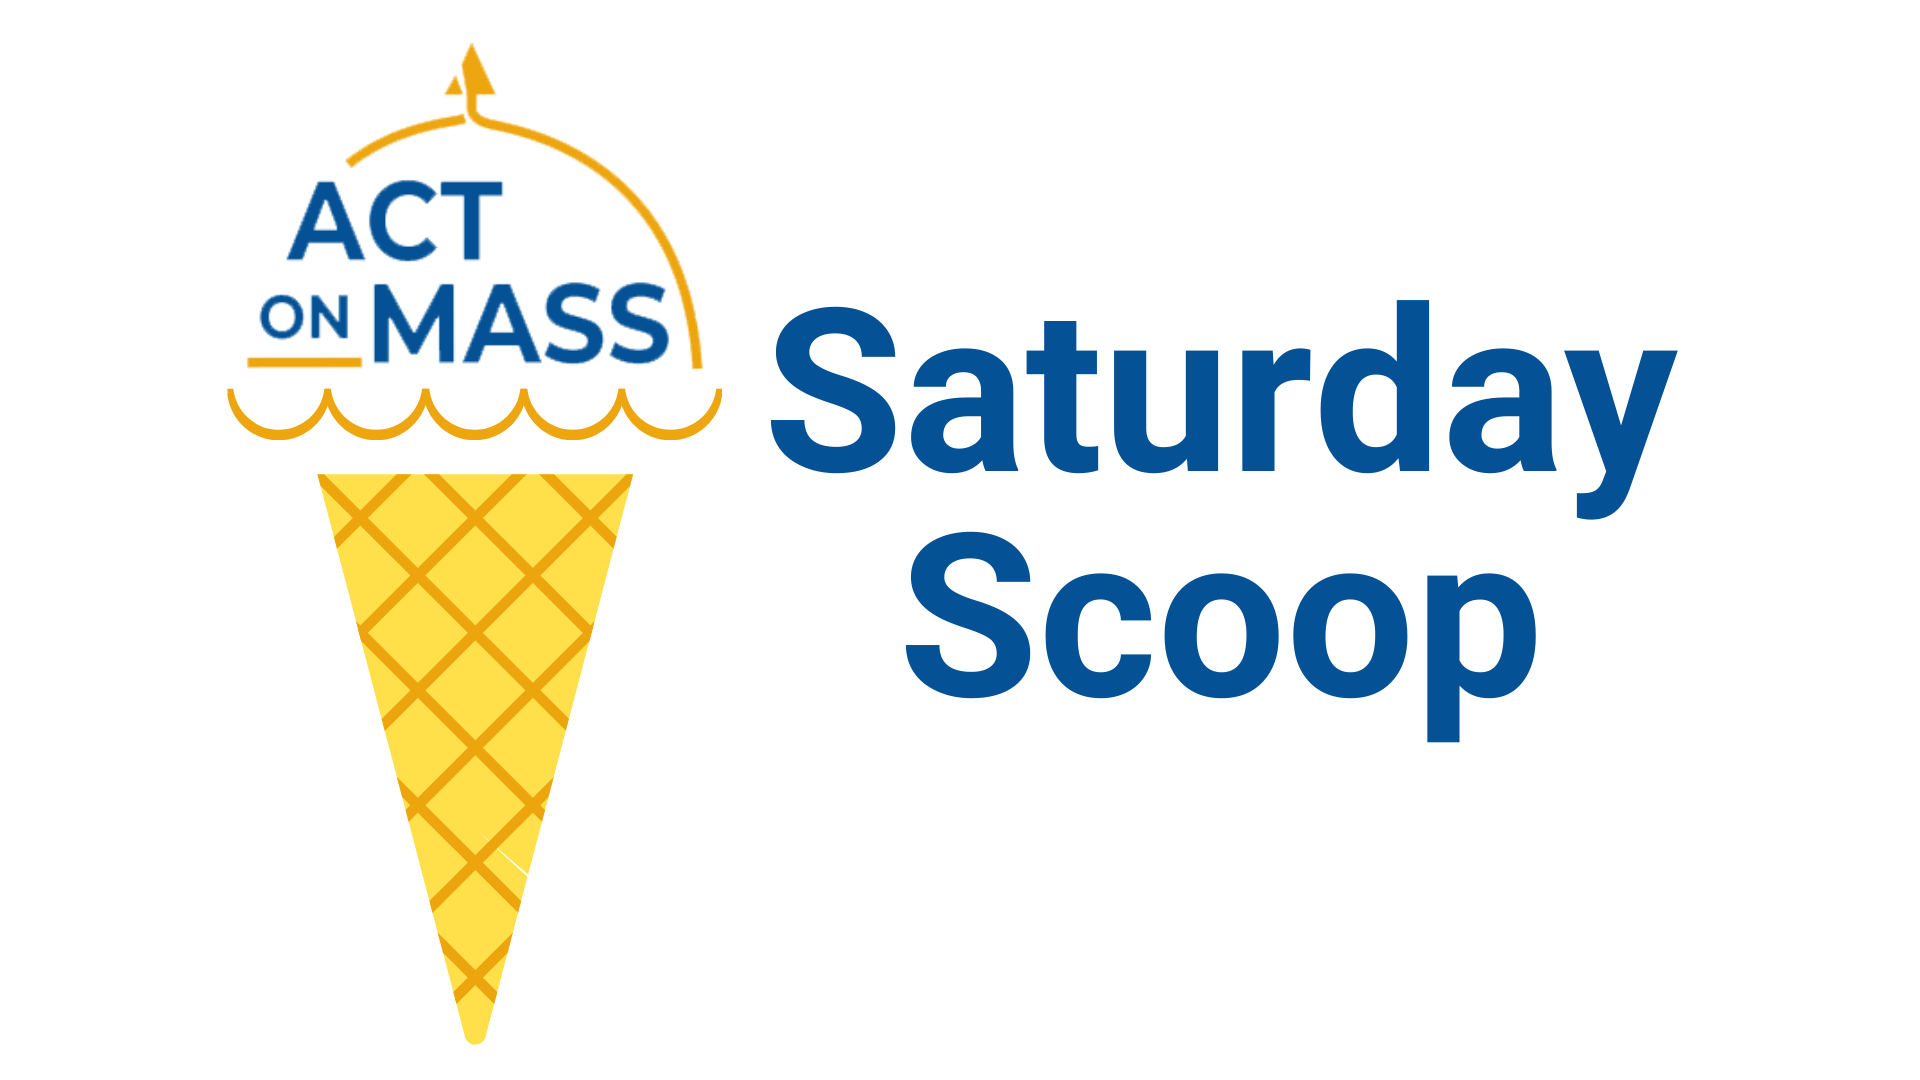 Saturday scoop ice cream